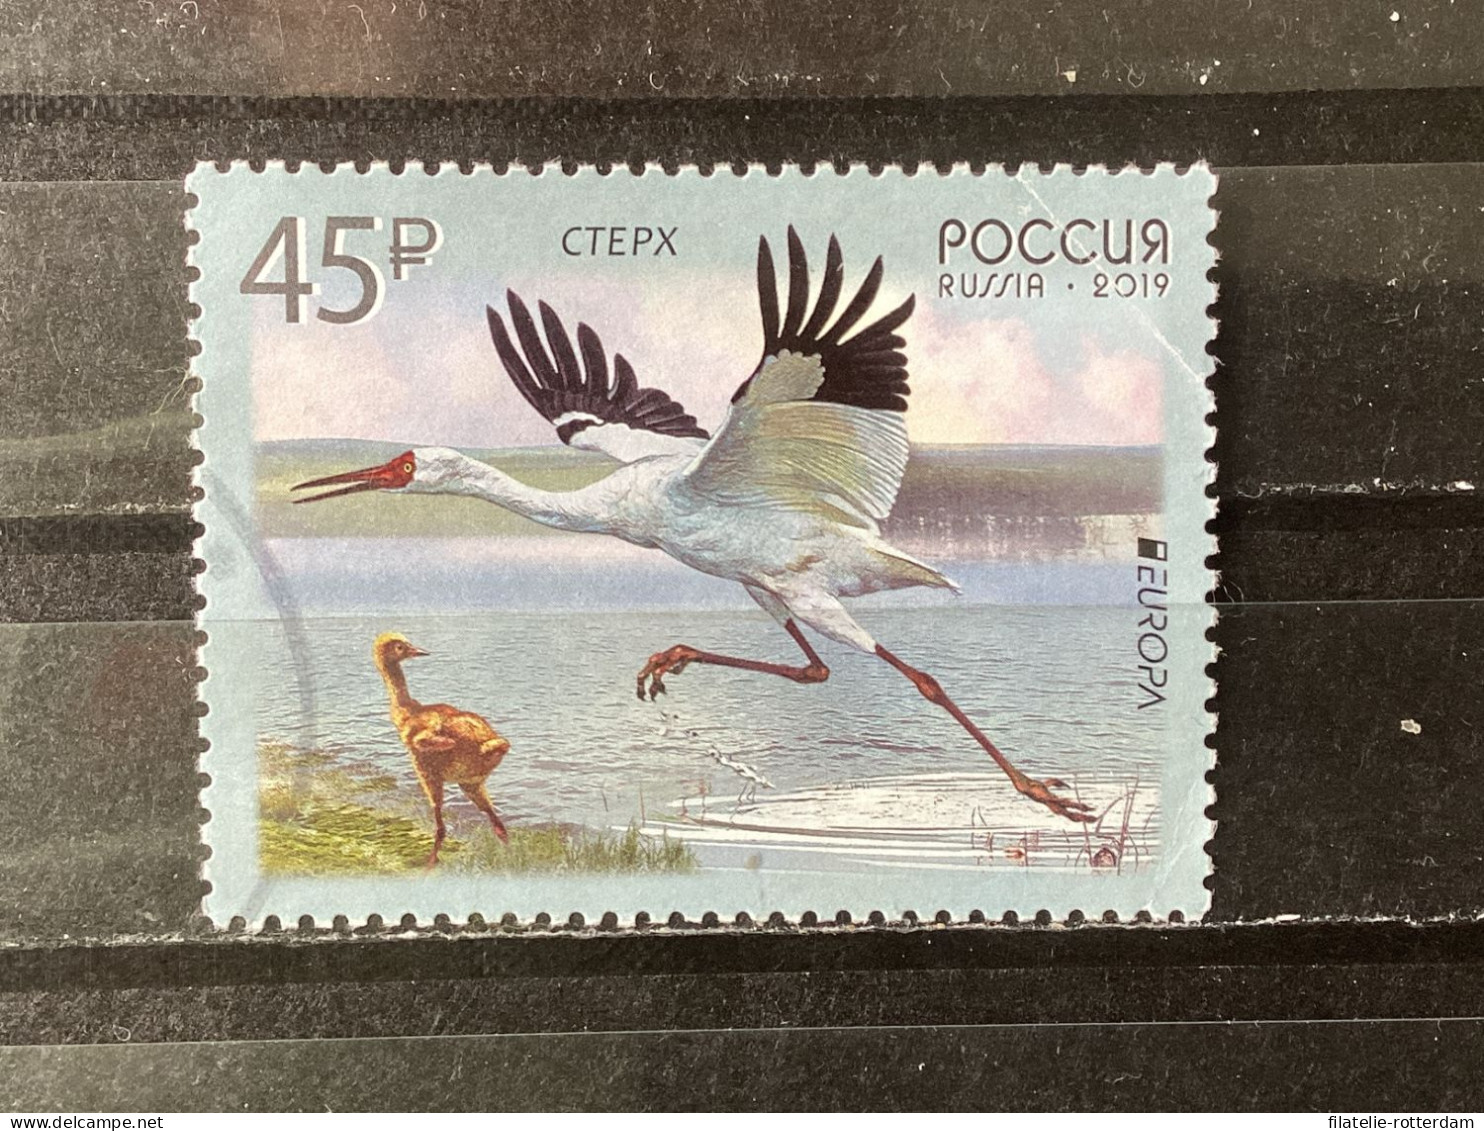 Russia / Rusland - Birds (45) 2019 - Oblitérés